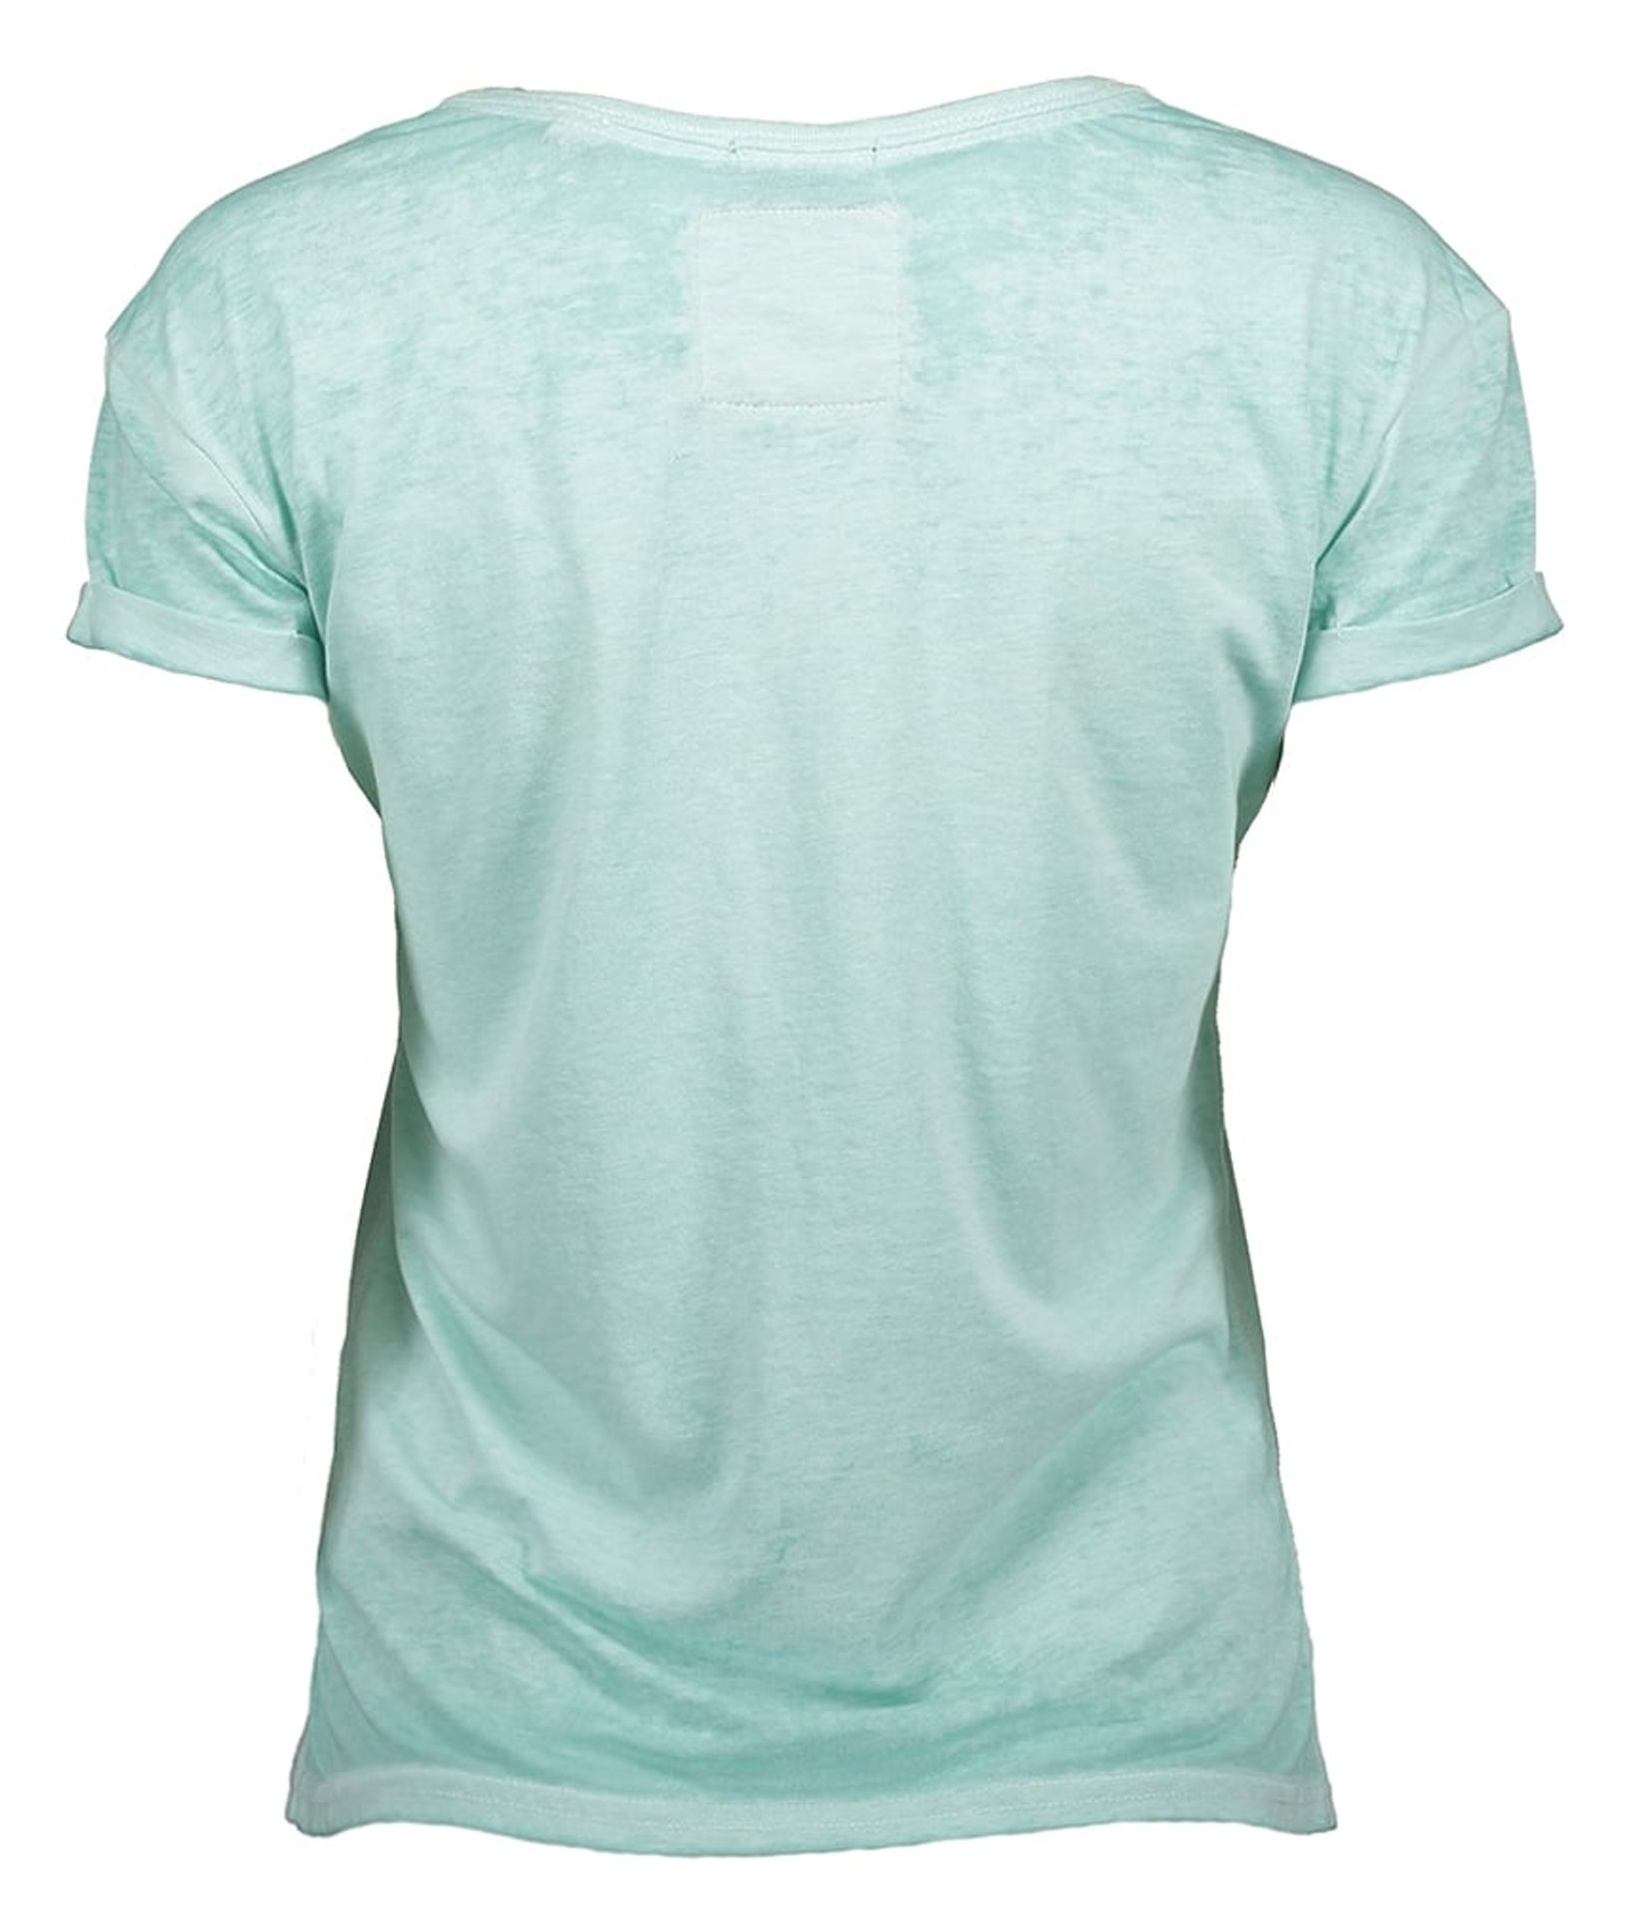 تی شرت یقه گرد زنانه - سوپردرای